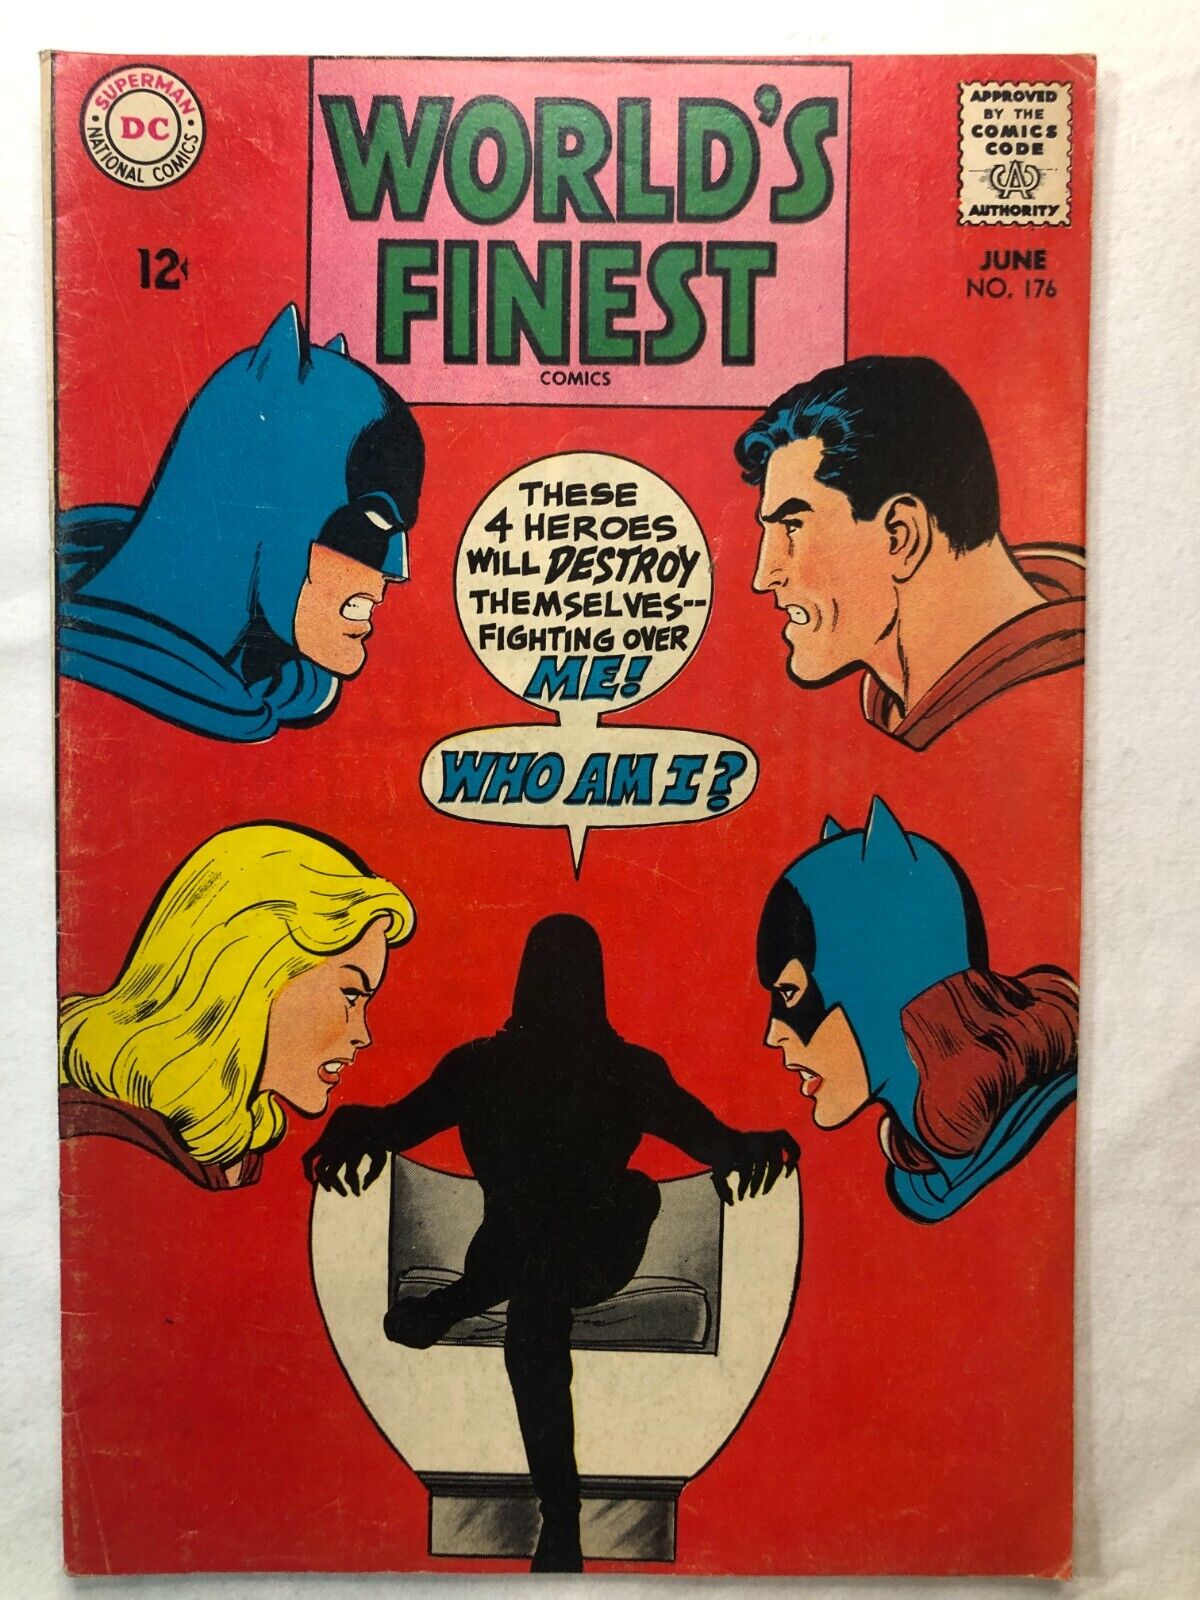 World's Finest Comics 176 June 1968 Vintage DC Comics Silver Age Batman Superman